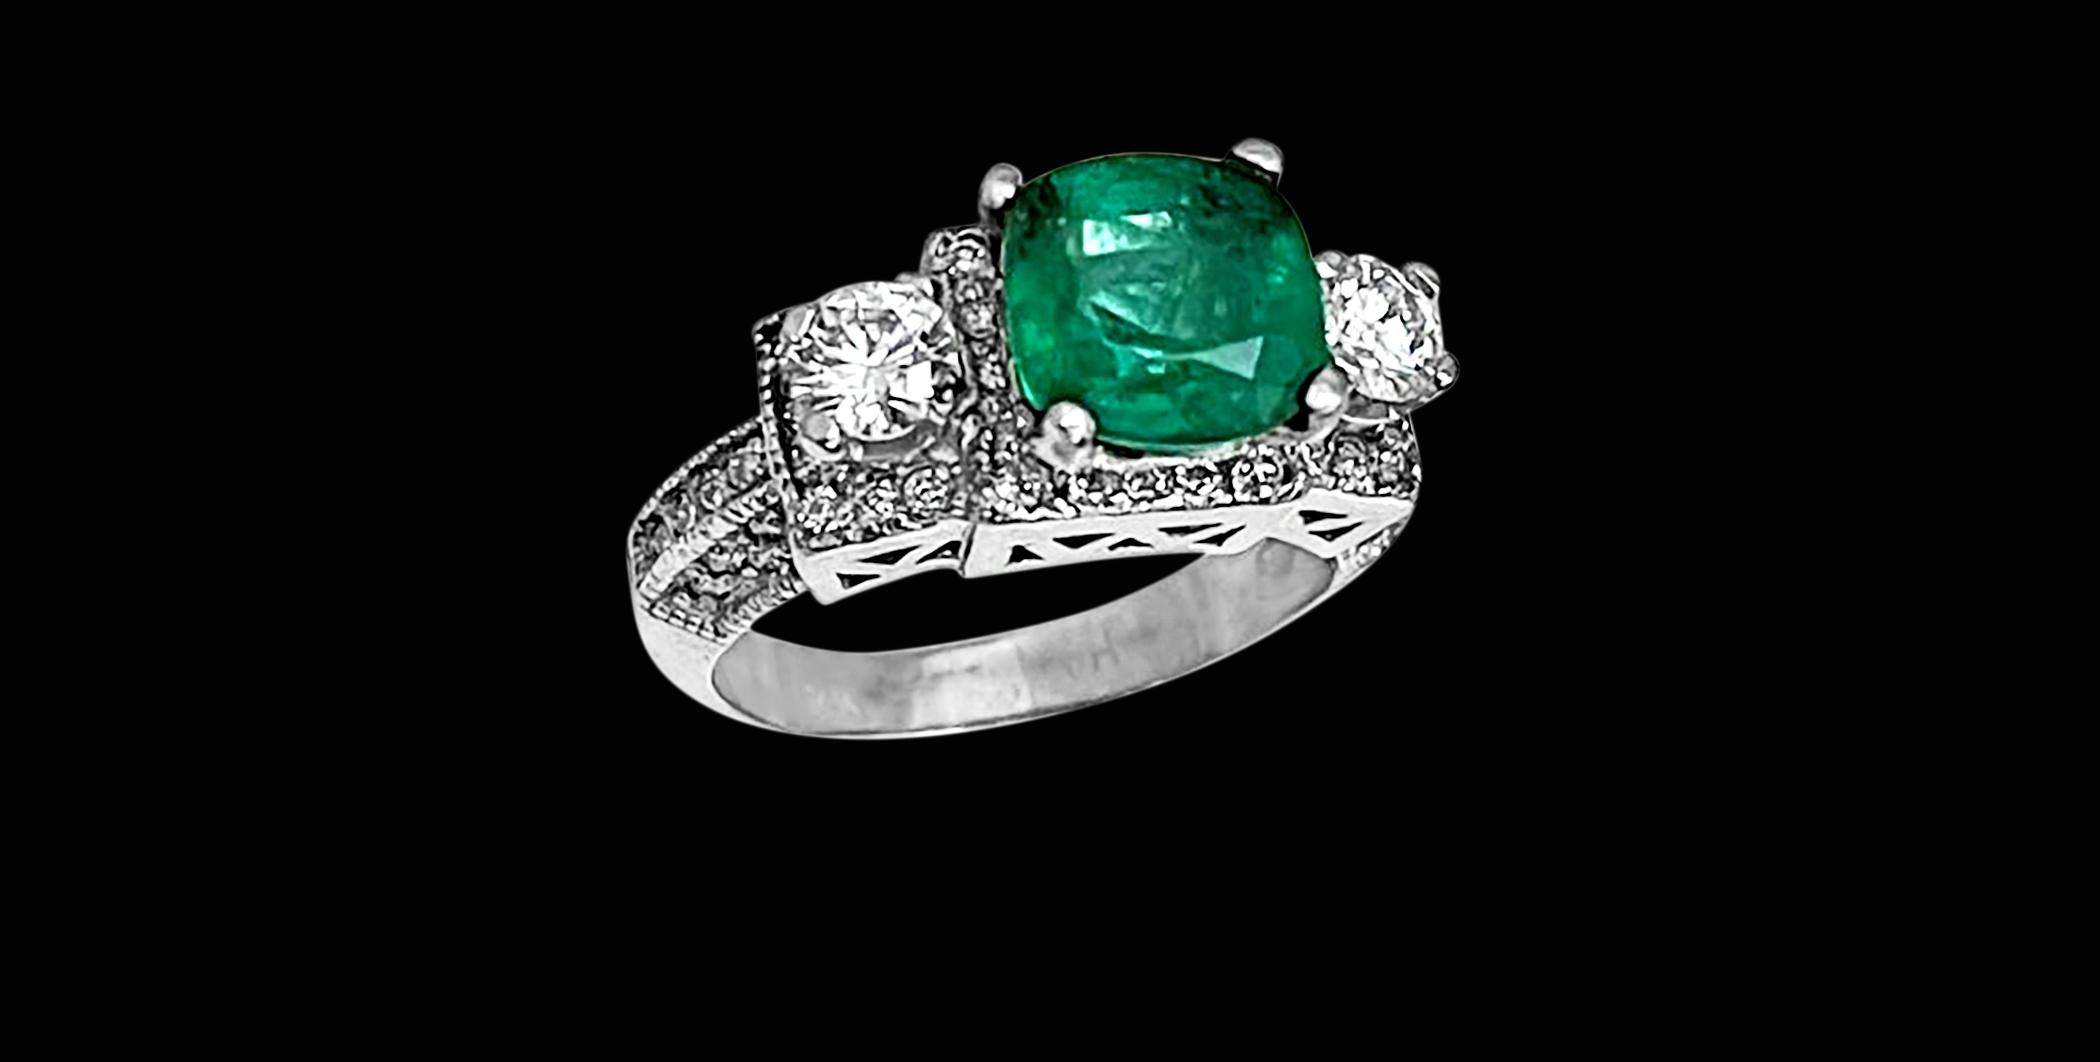 Une bague de cocktail classique 
 2 Carat Natural Cushion Cut Emerald & Diamond Ring 14 Karat White Gold Size 6
Couleur verte intense, belle pierre brillante et lustrée.  mais a de petites  inclusions, car toutes les émeraudes naturelles présentent